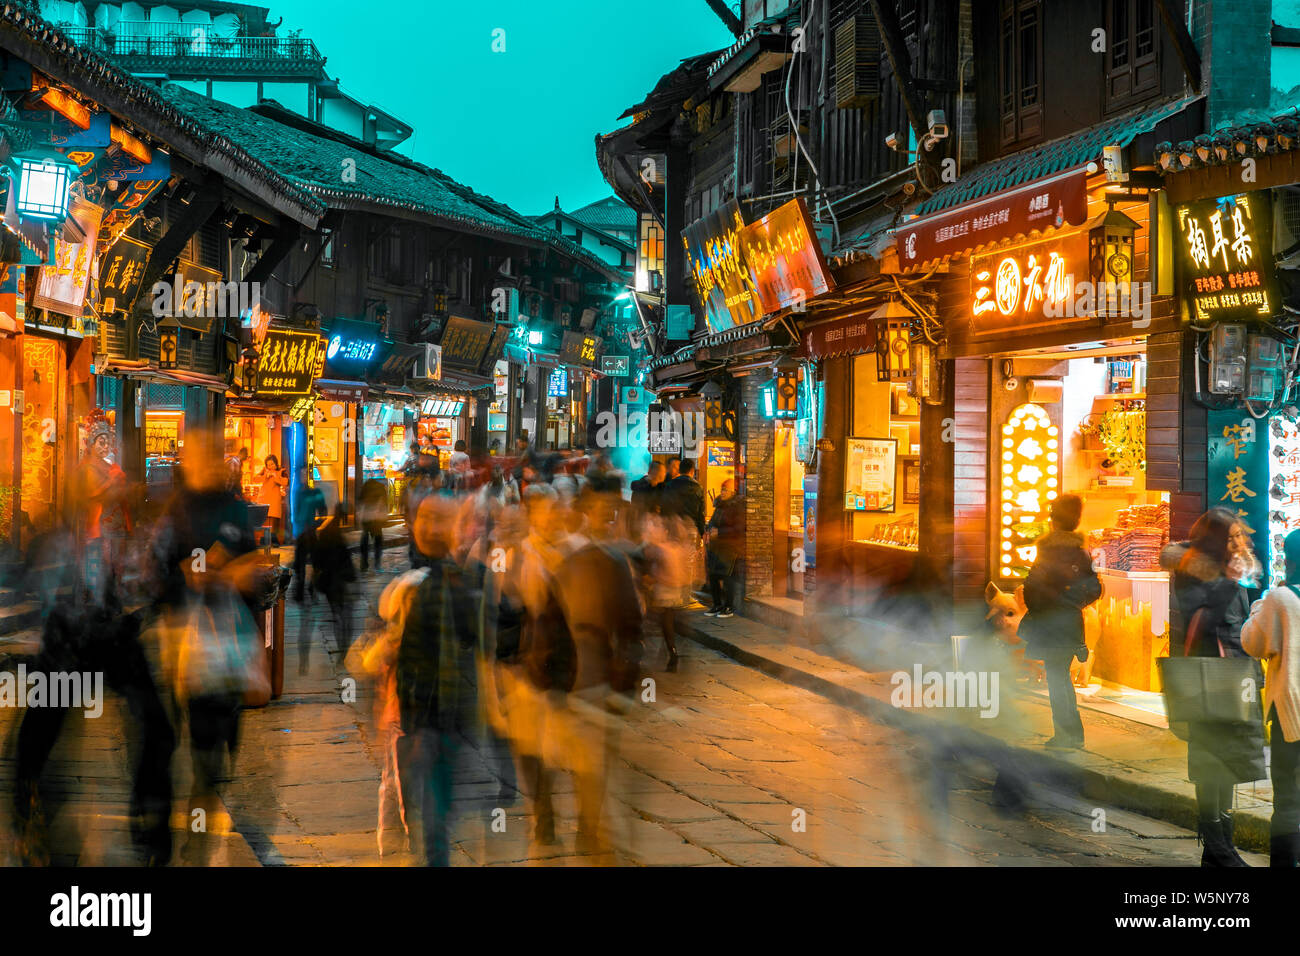 --FILE--turisti a piedi passato negozi lungo la strada in Ciqikou antica città, Chongqing, la Cina, il 13 dicembre 2018. Foto Stock